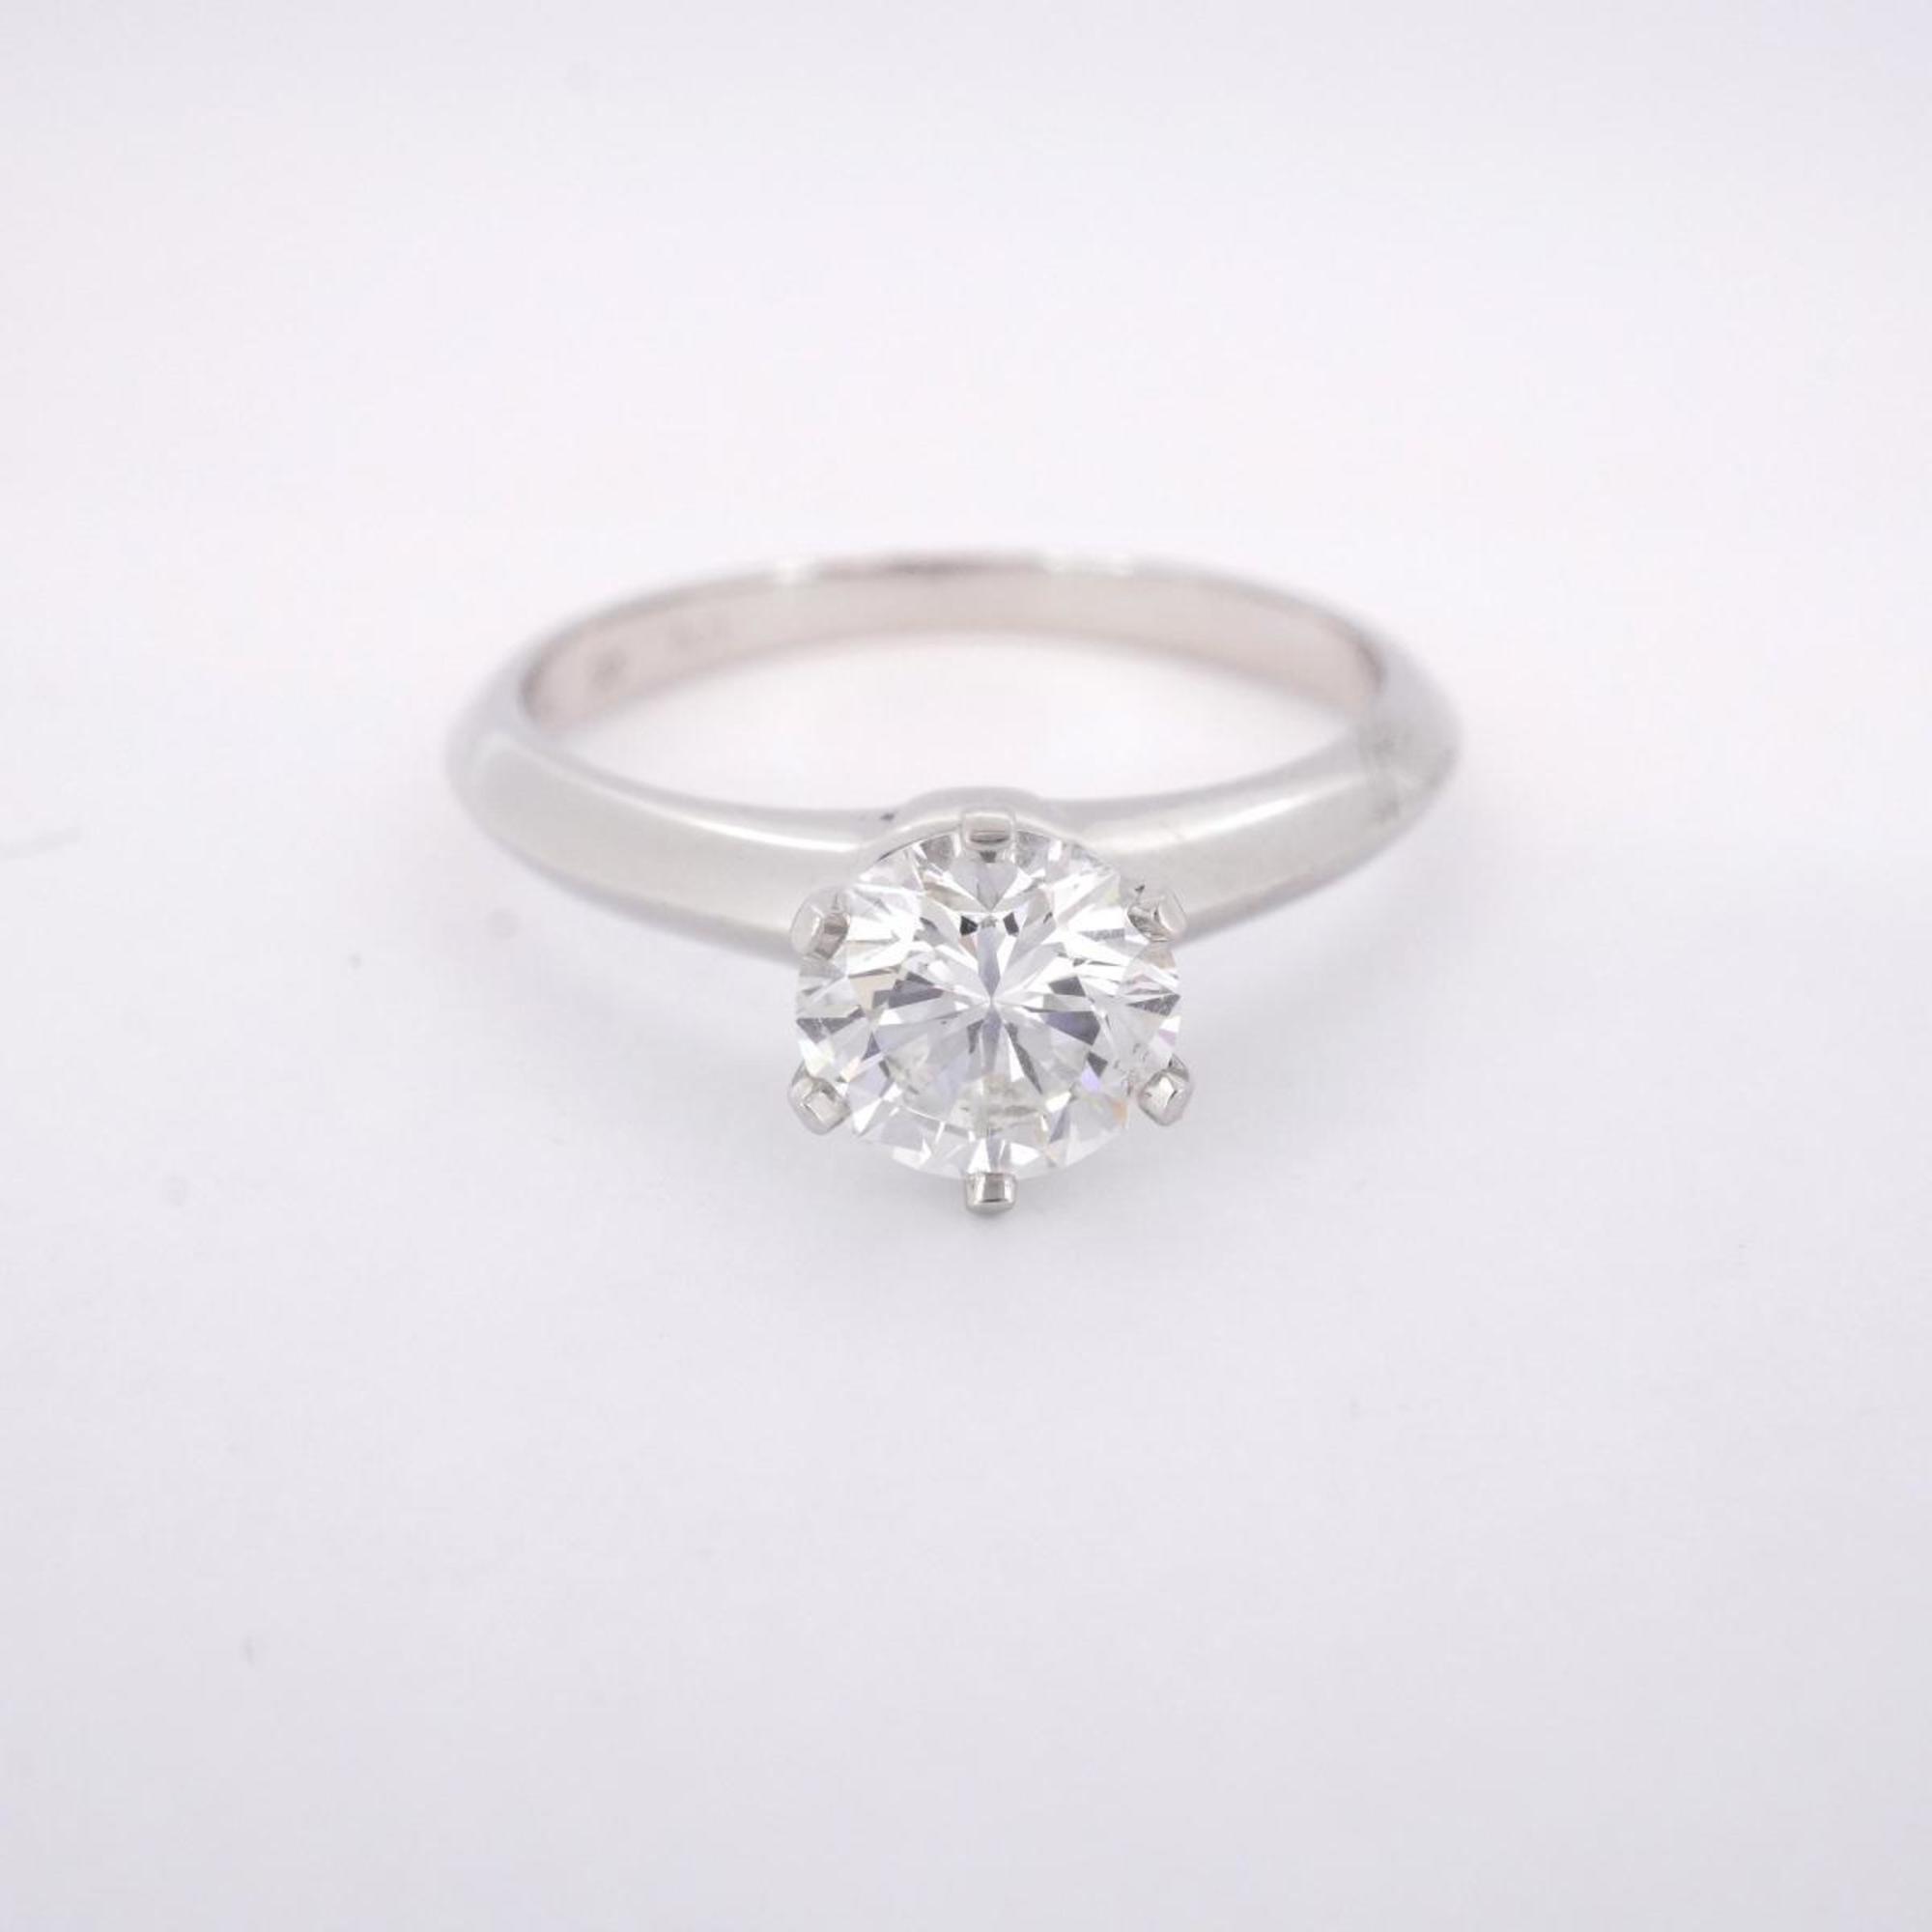 Tiffany Ring Solitaire 1PD Pt950 Platinum 0.83ct Ladies